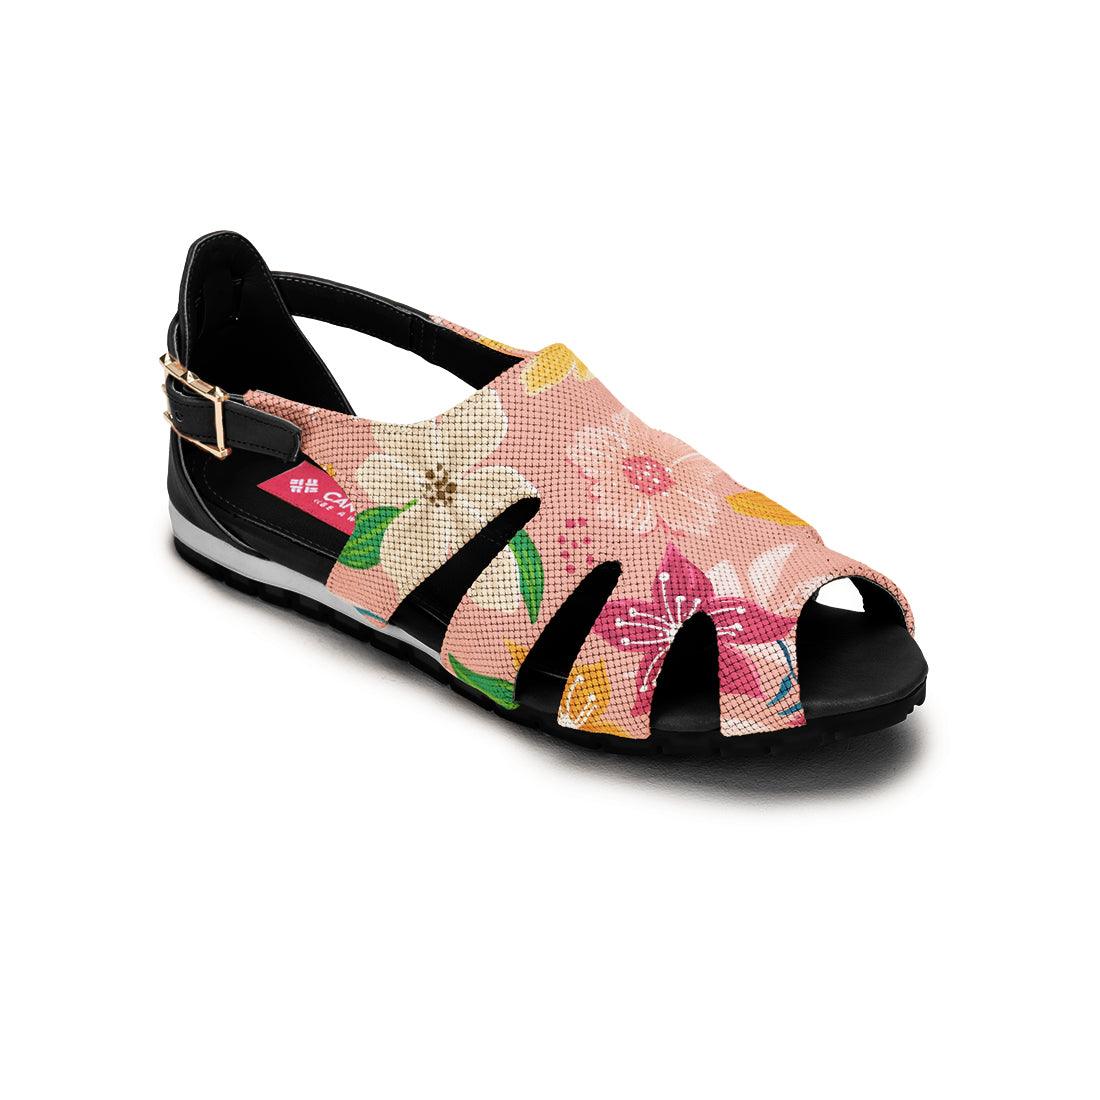 Black Spider Toe Sandal Pink Floral - CANVAEGYPT